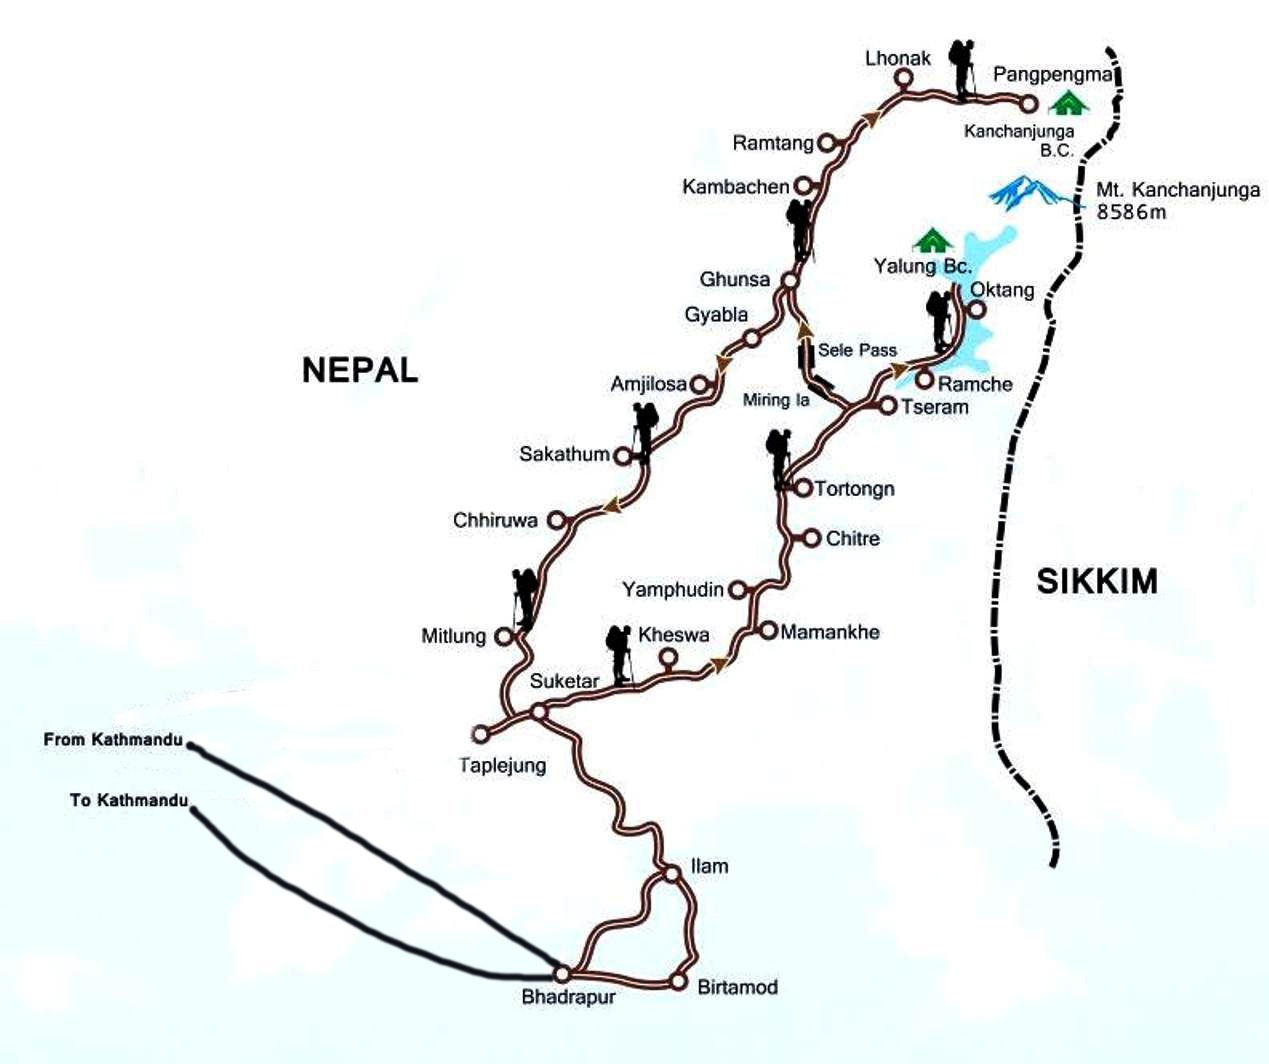 Kanchenjunga circuit trek 21 day map